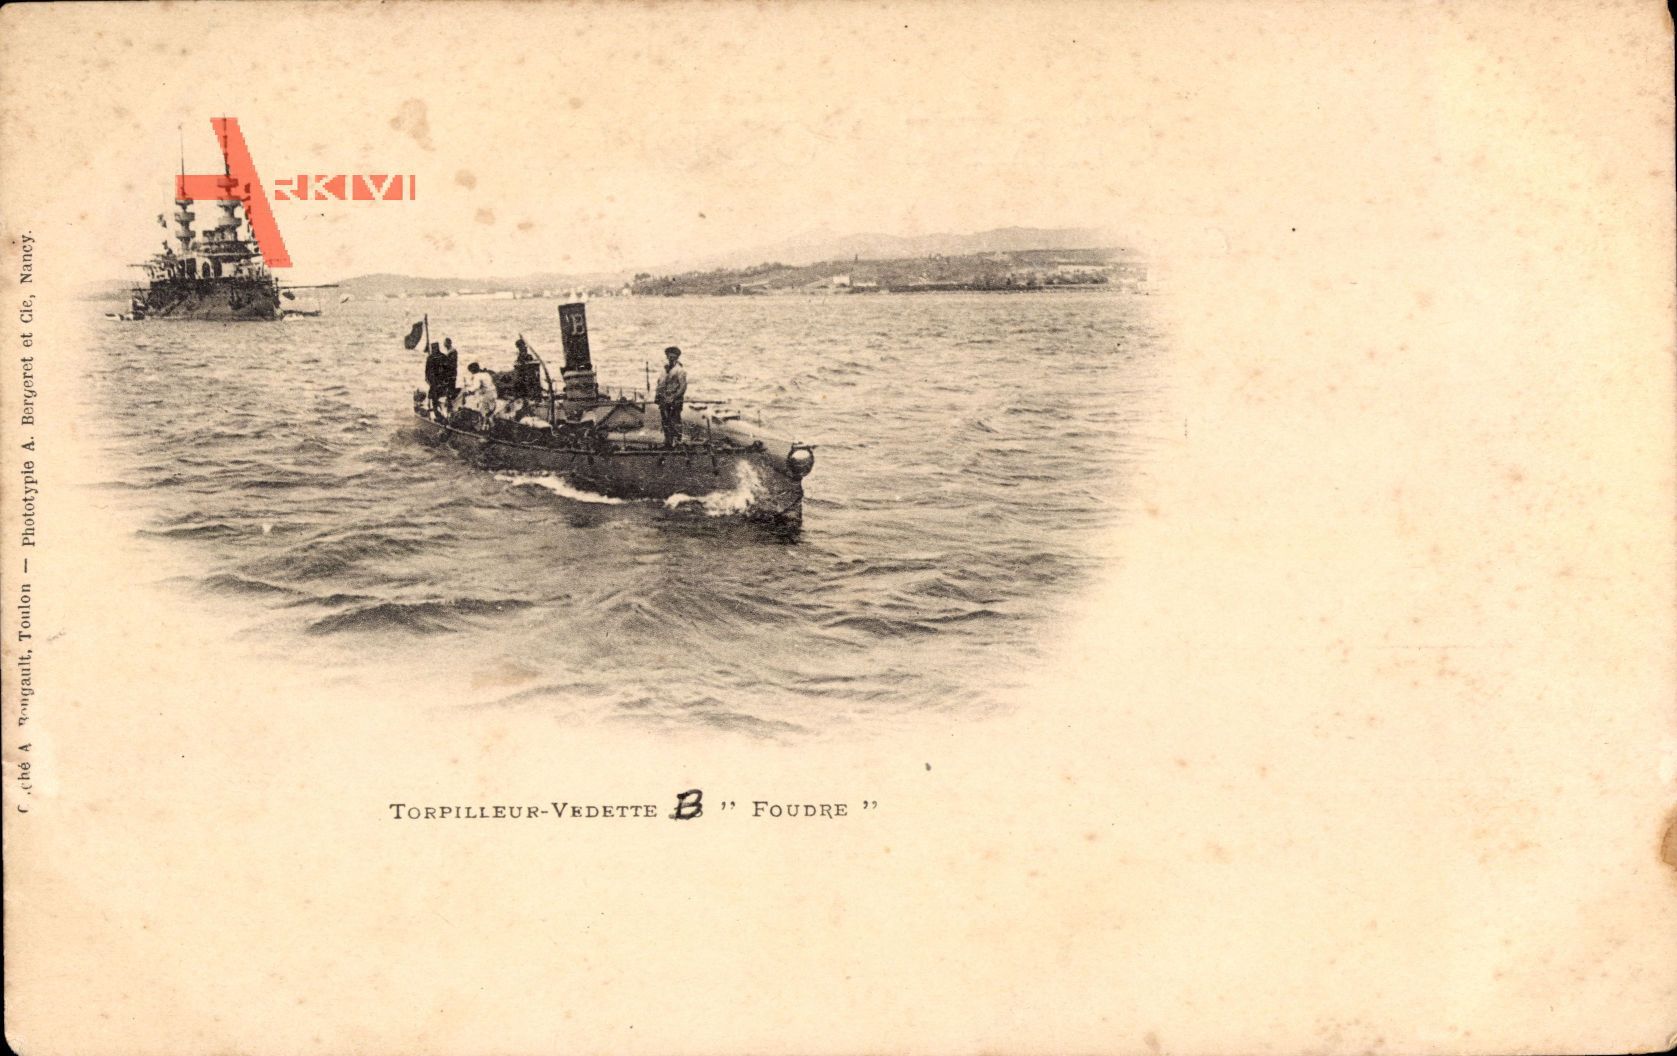 Französisches Kriegsschiff, Torpilleur Vedette B, Foudre